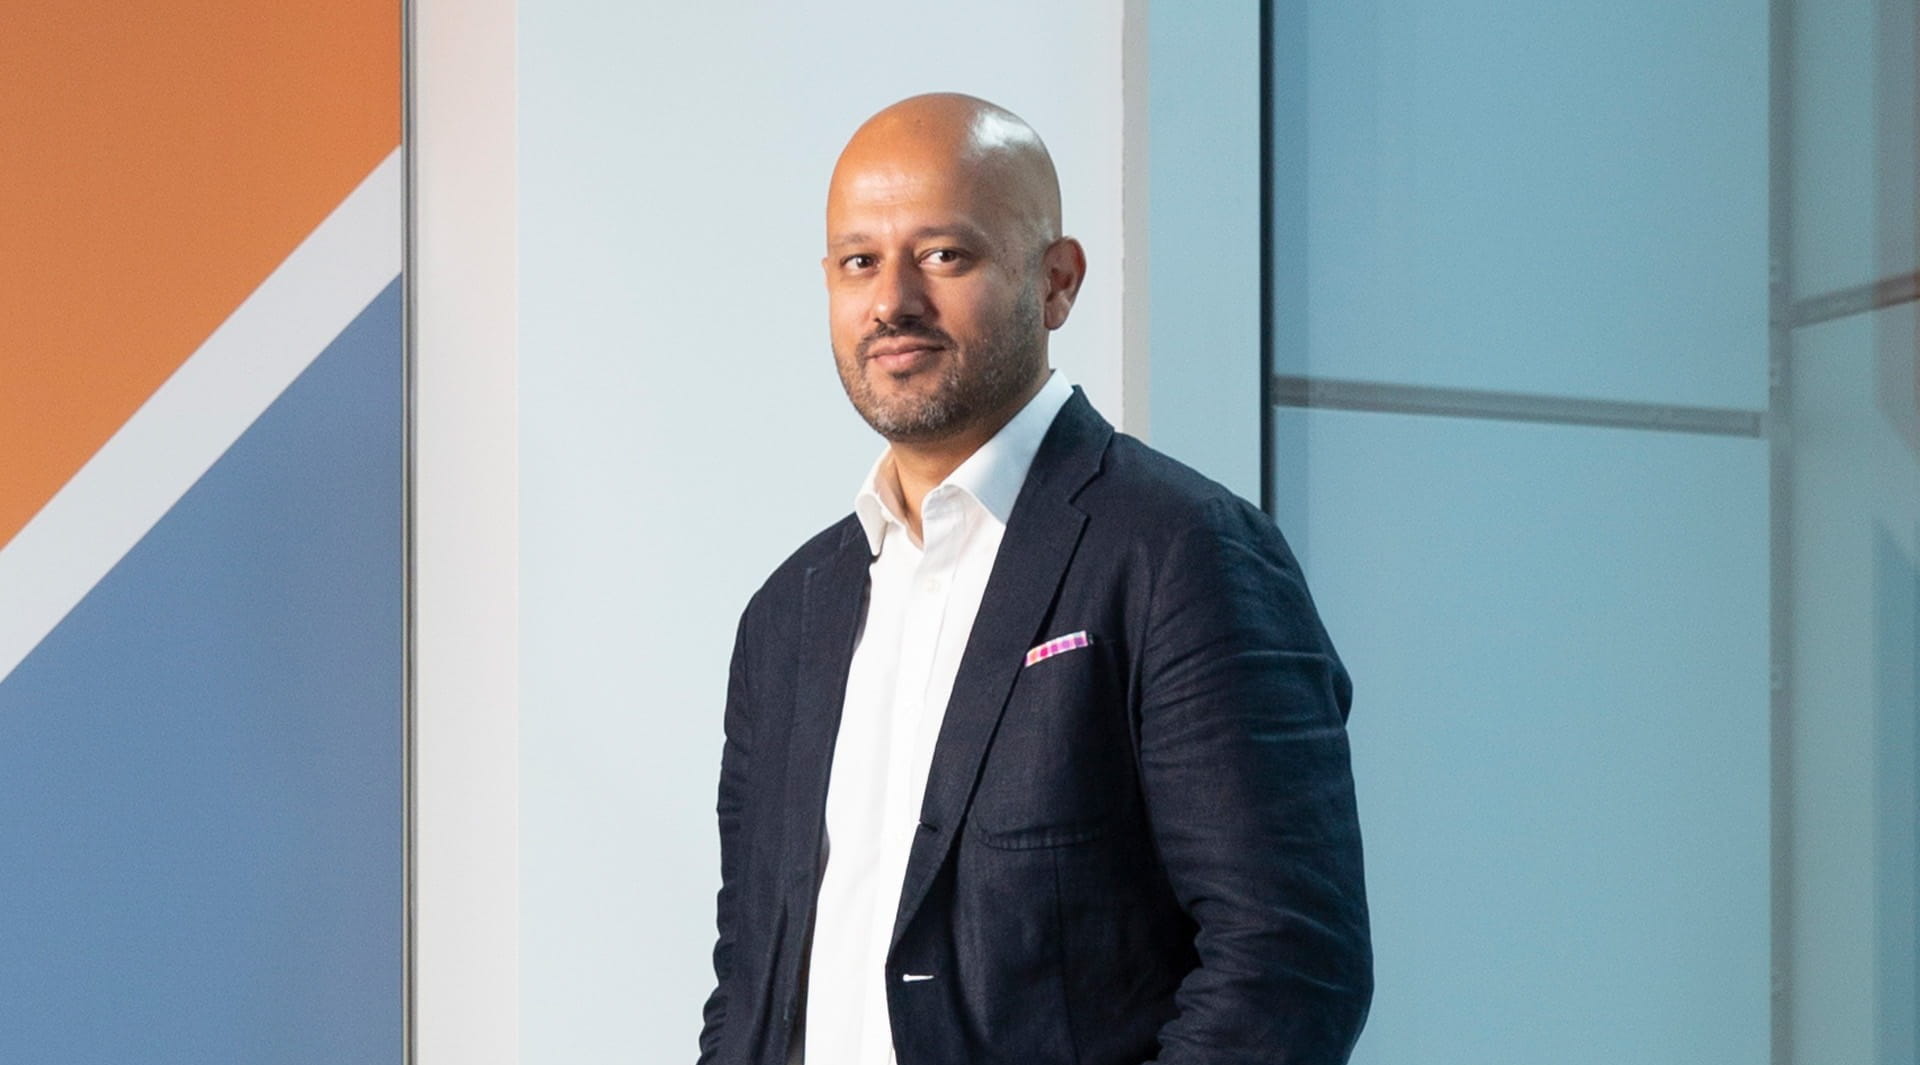 Gurpal Ahluwalia BDO UK head of M&A profile Corporate Financier